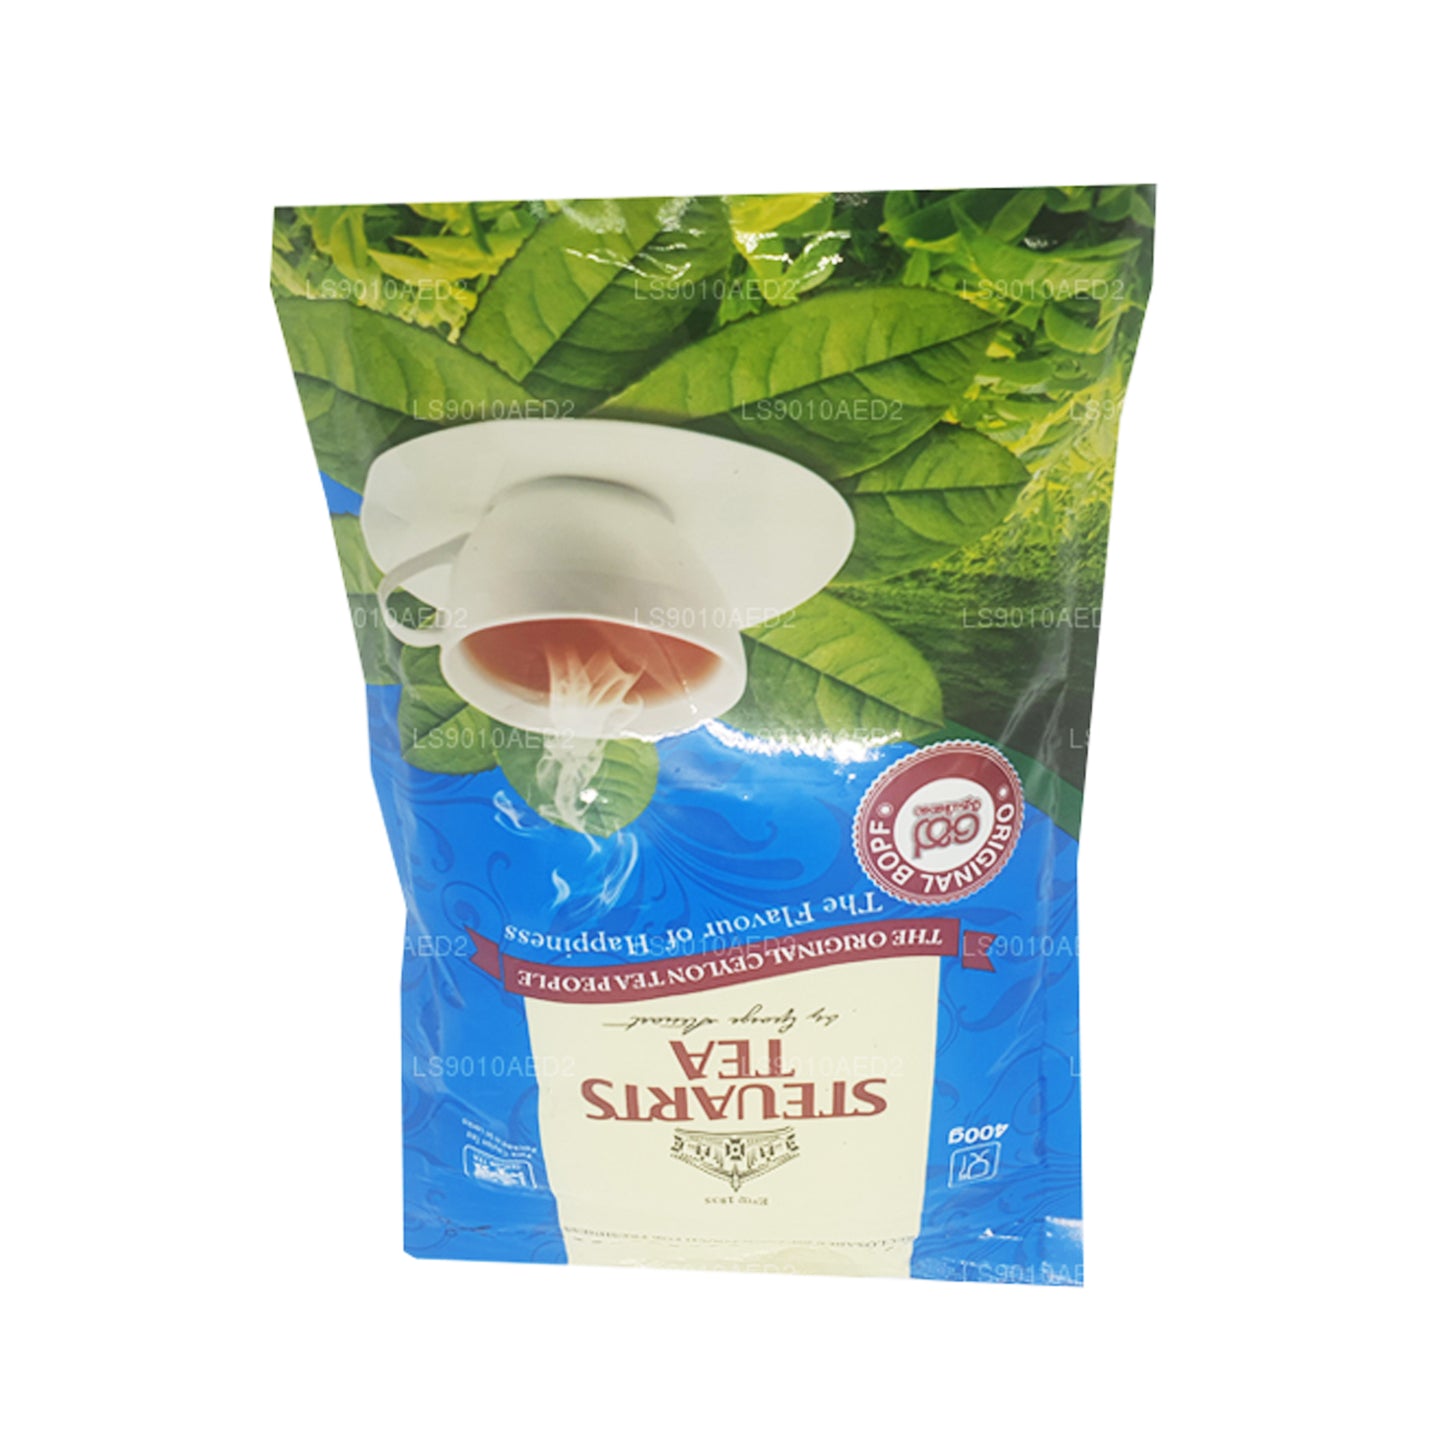 George Steuart Tea Premium Ceylon Black Loose Leaf Tea BOPF (400g)